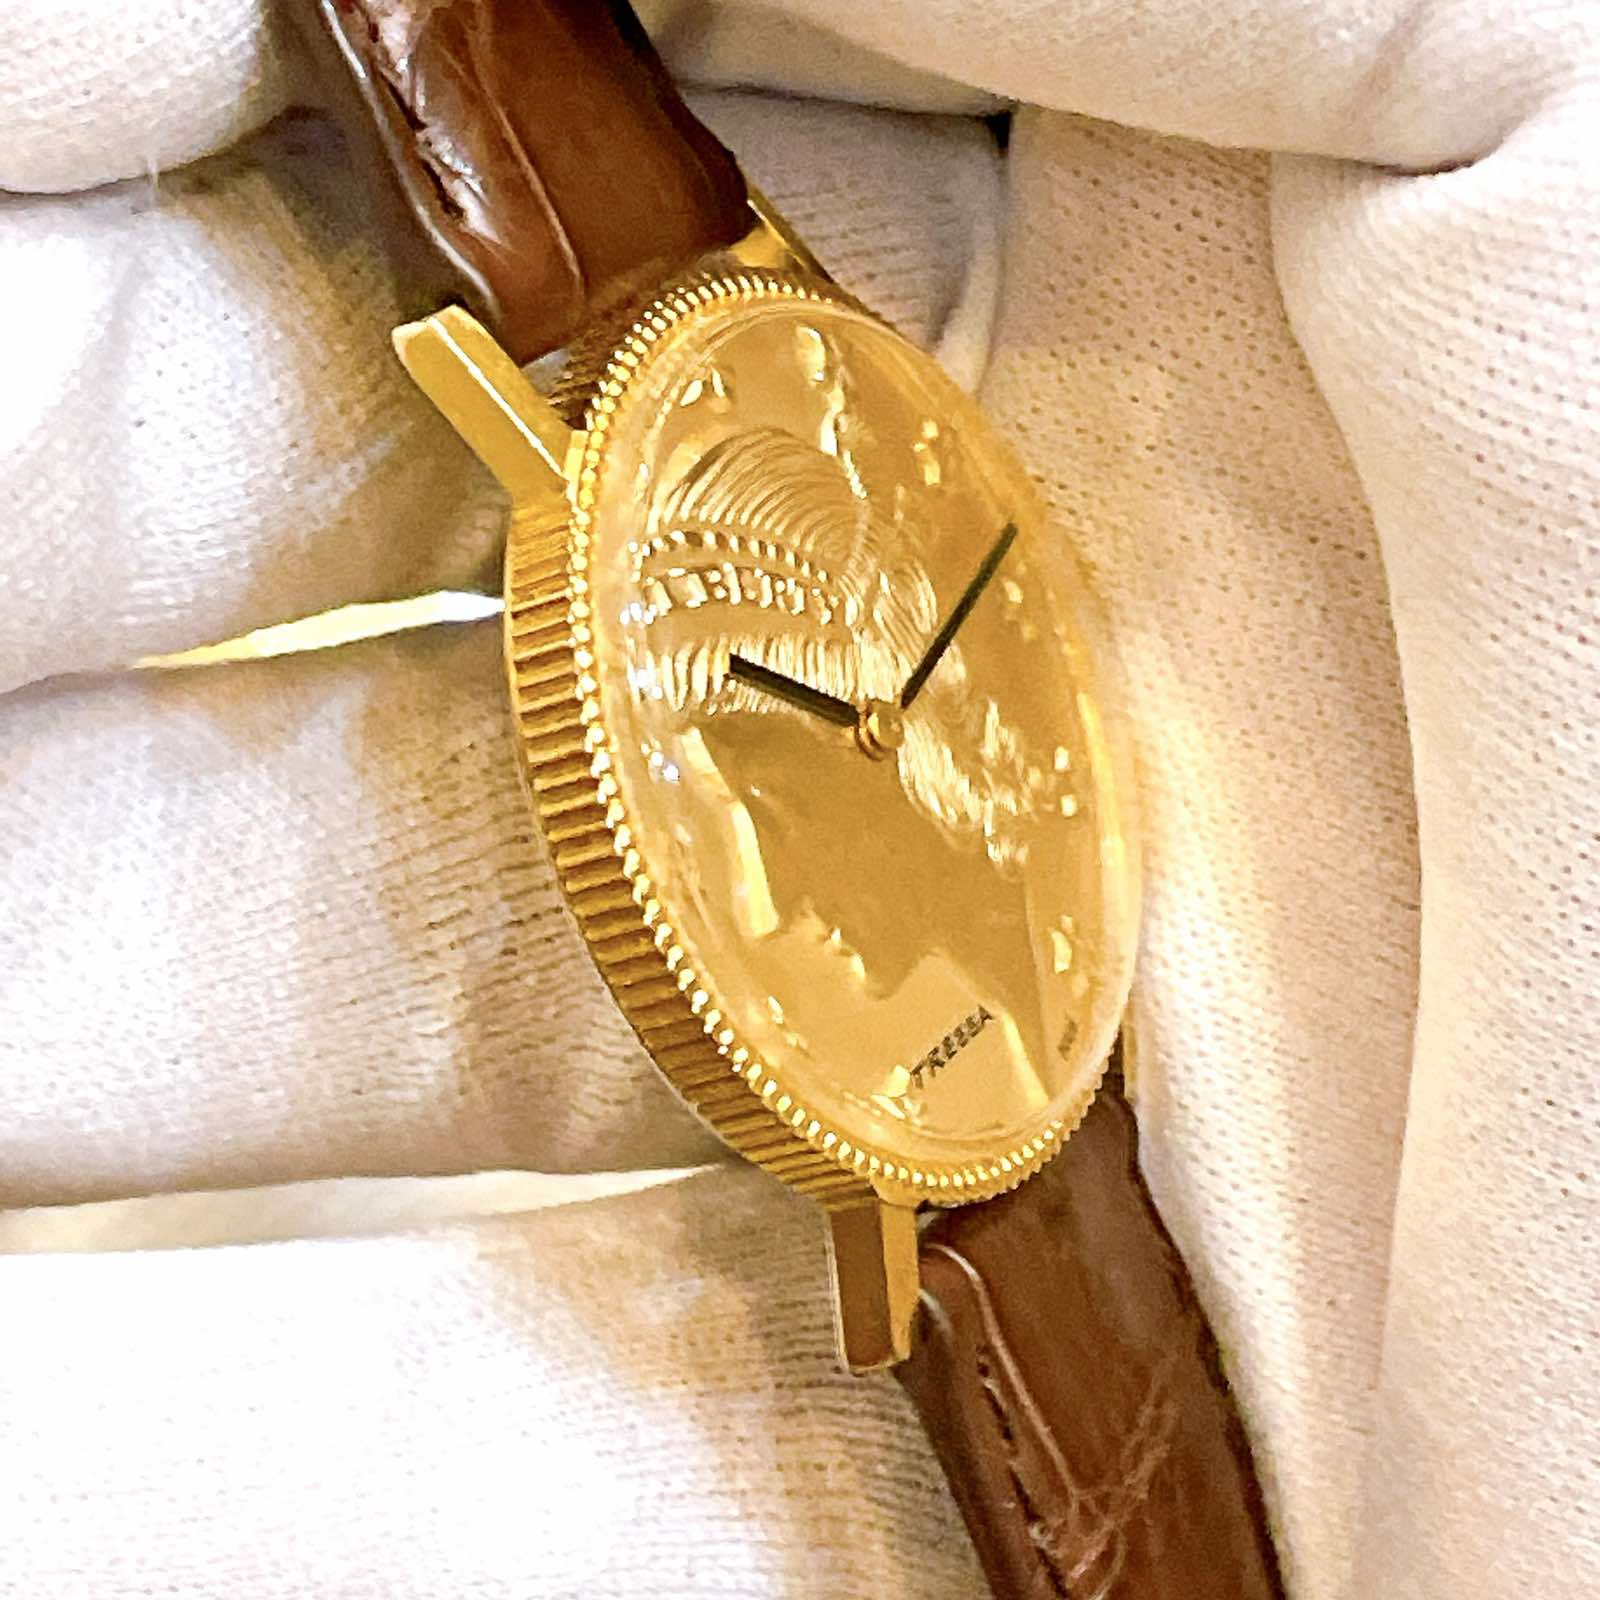 Đồng hồ Tressa lên dây lacke vàng 18k đồng tiền siêu mỏng cực đẹp chính hãng Thụy Sĩ